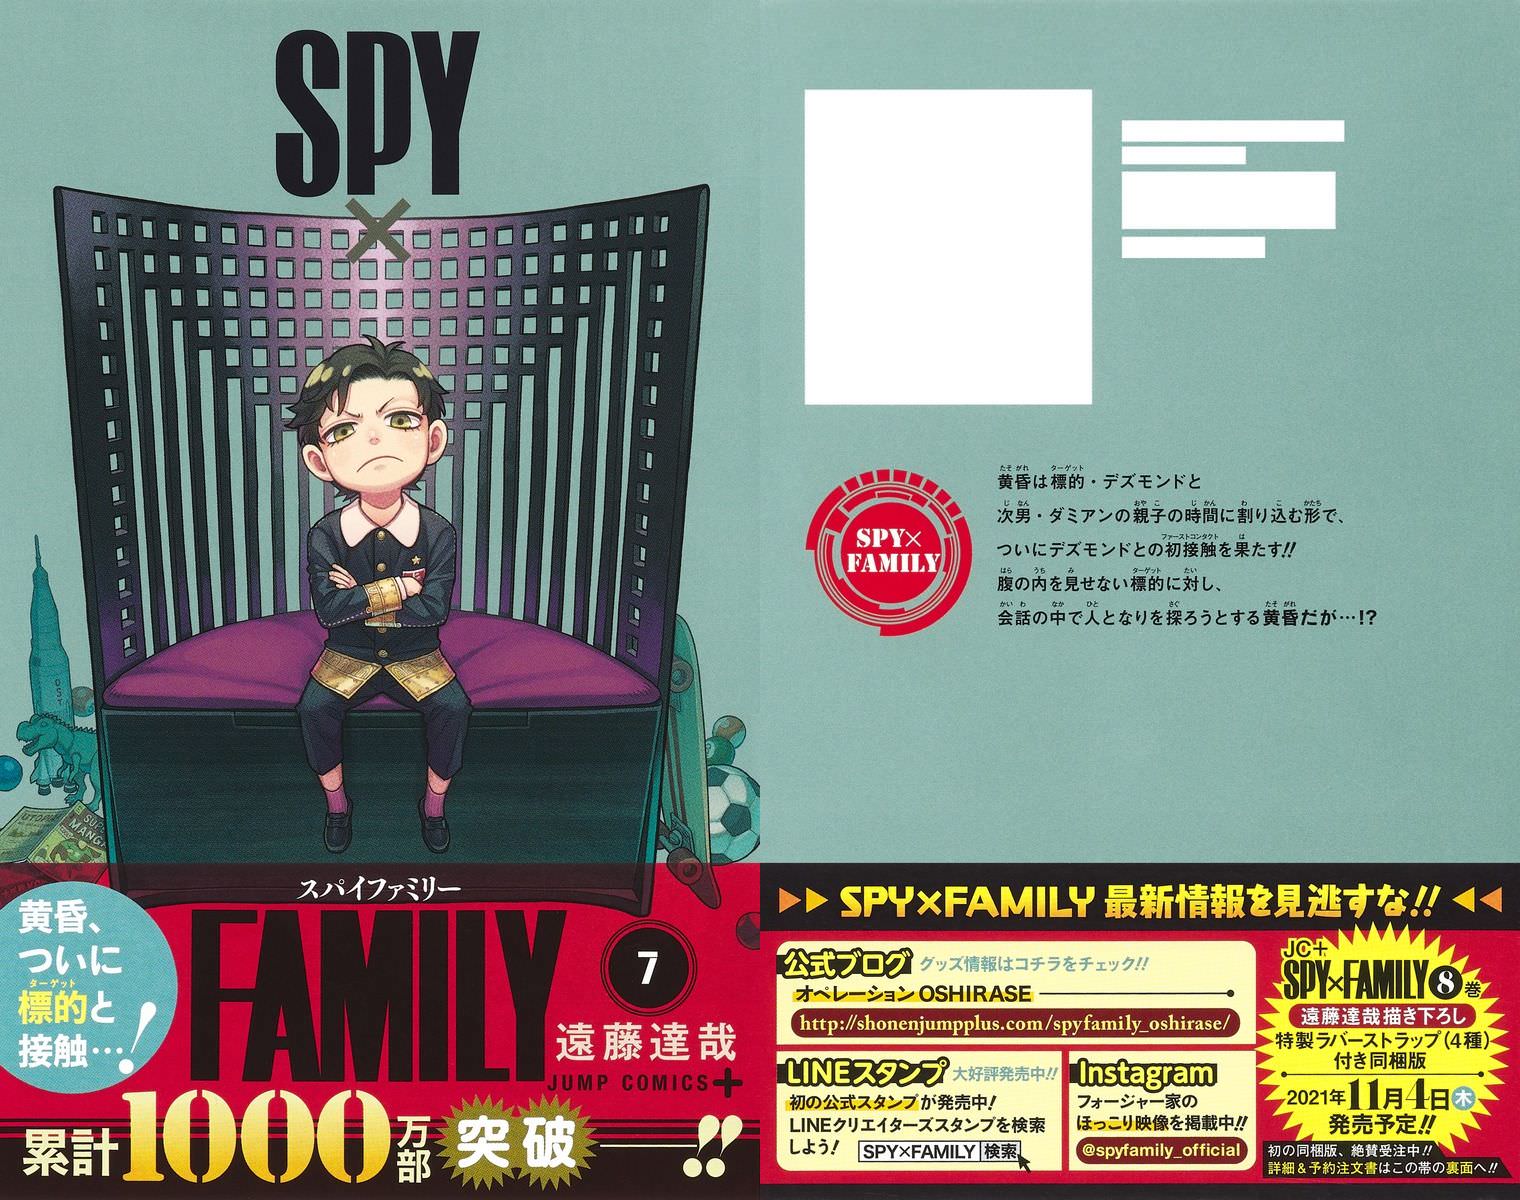 遠藤達哉「SPY×FAMILY」(スパイファミリー) 第7巻 6月4日発売!